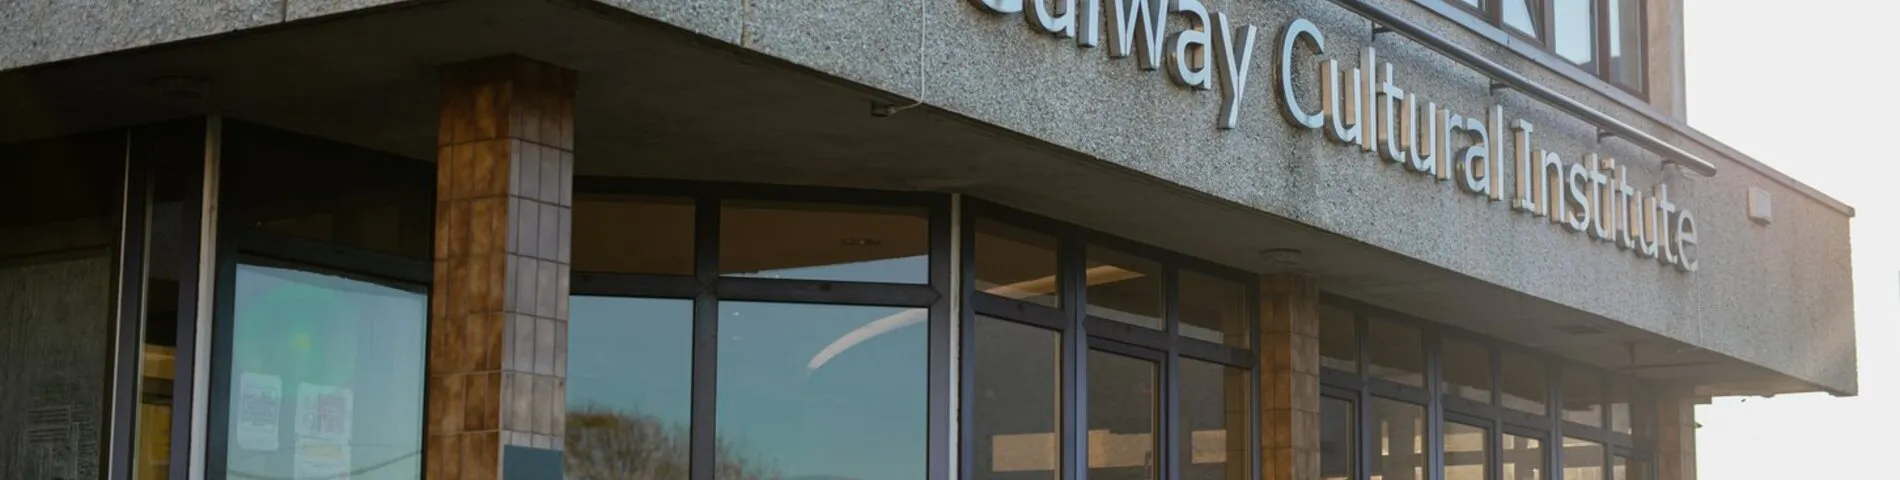 Galway Cultural Institute зображення 1